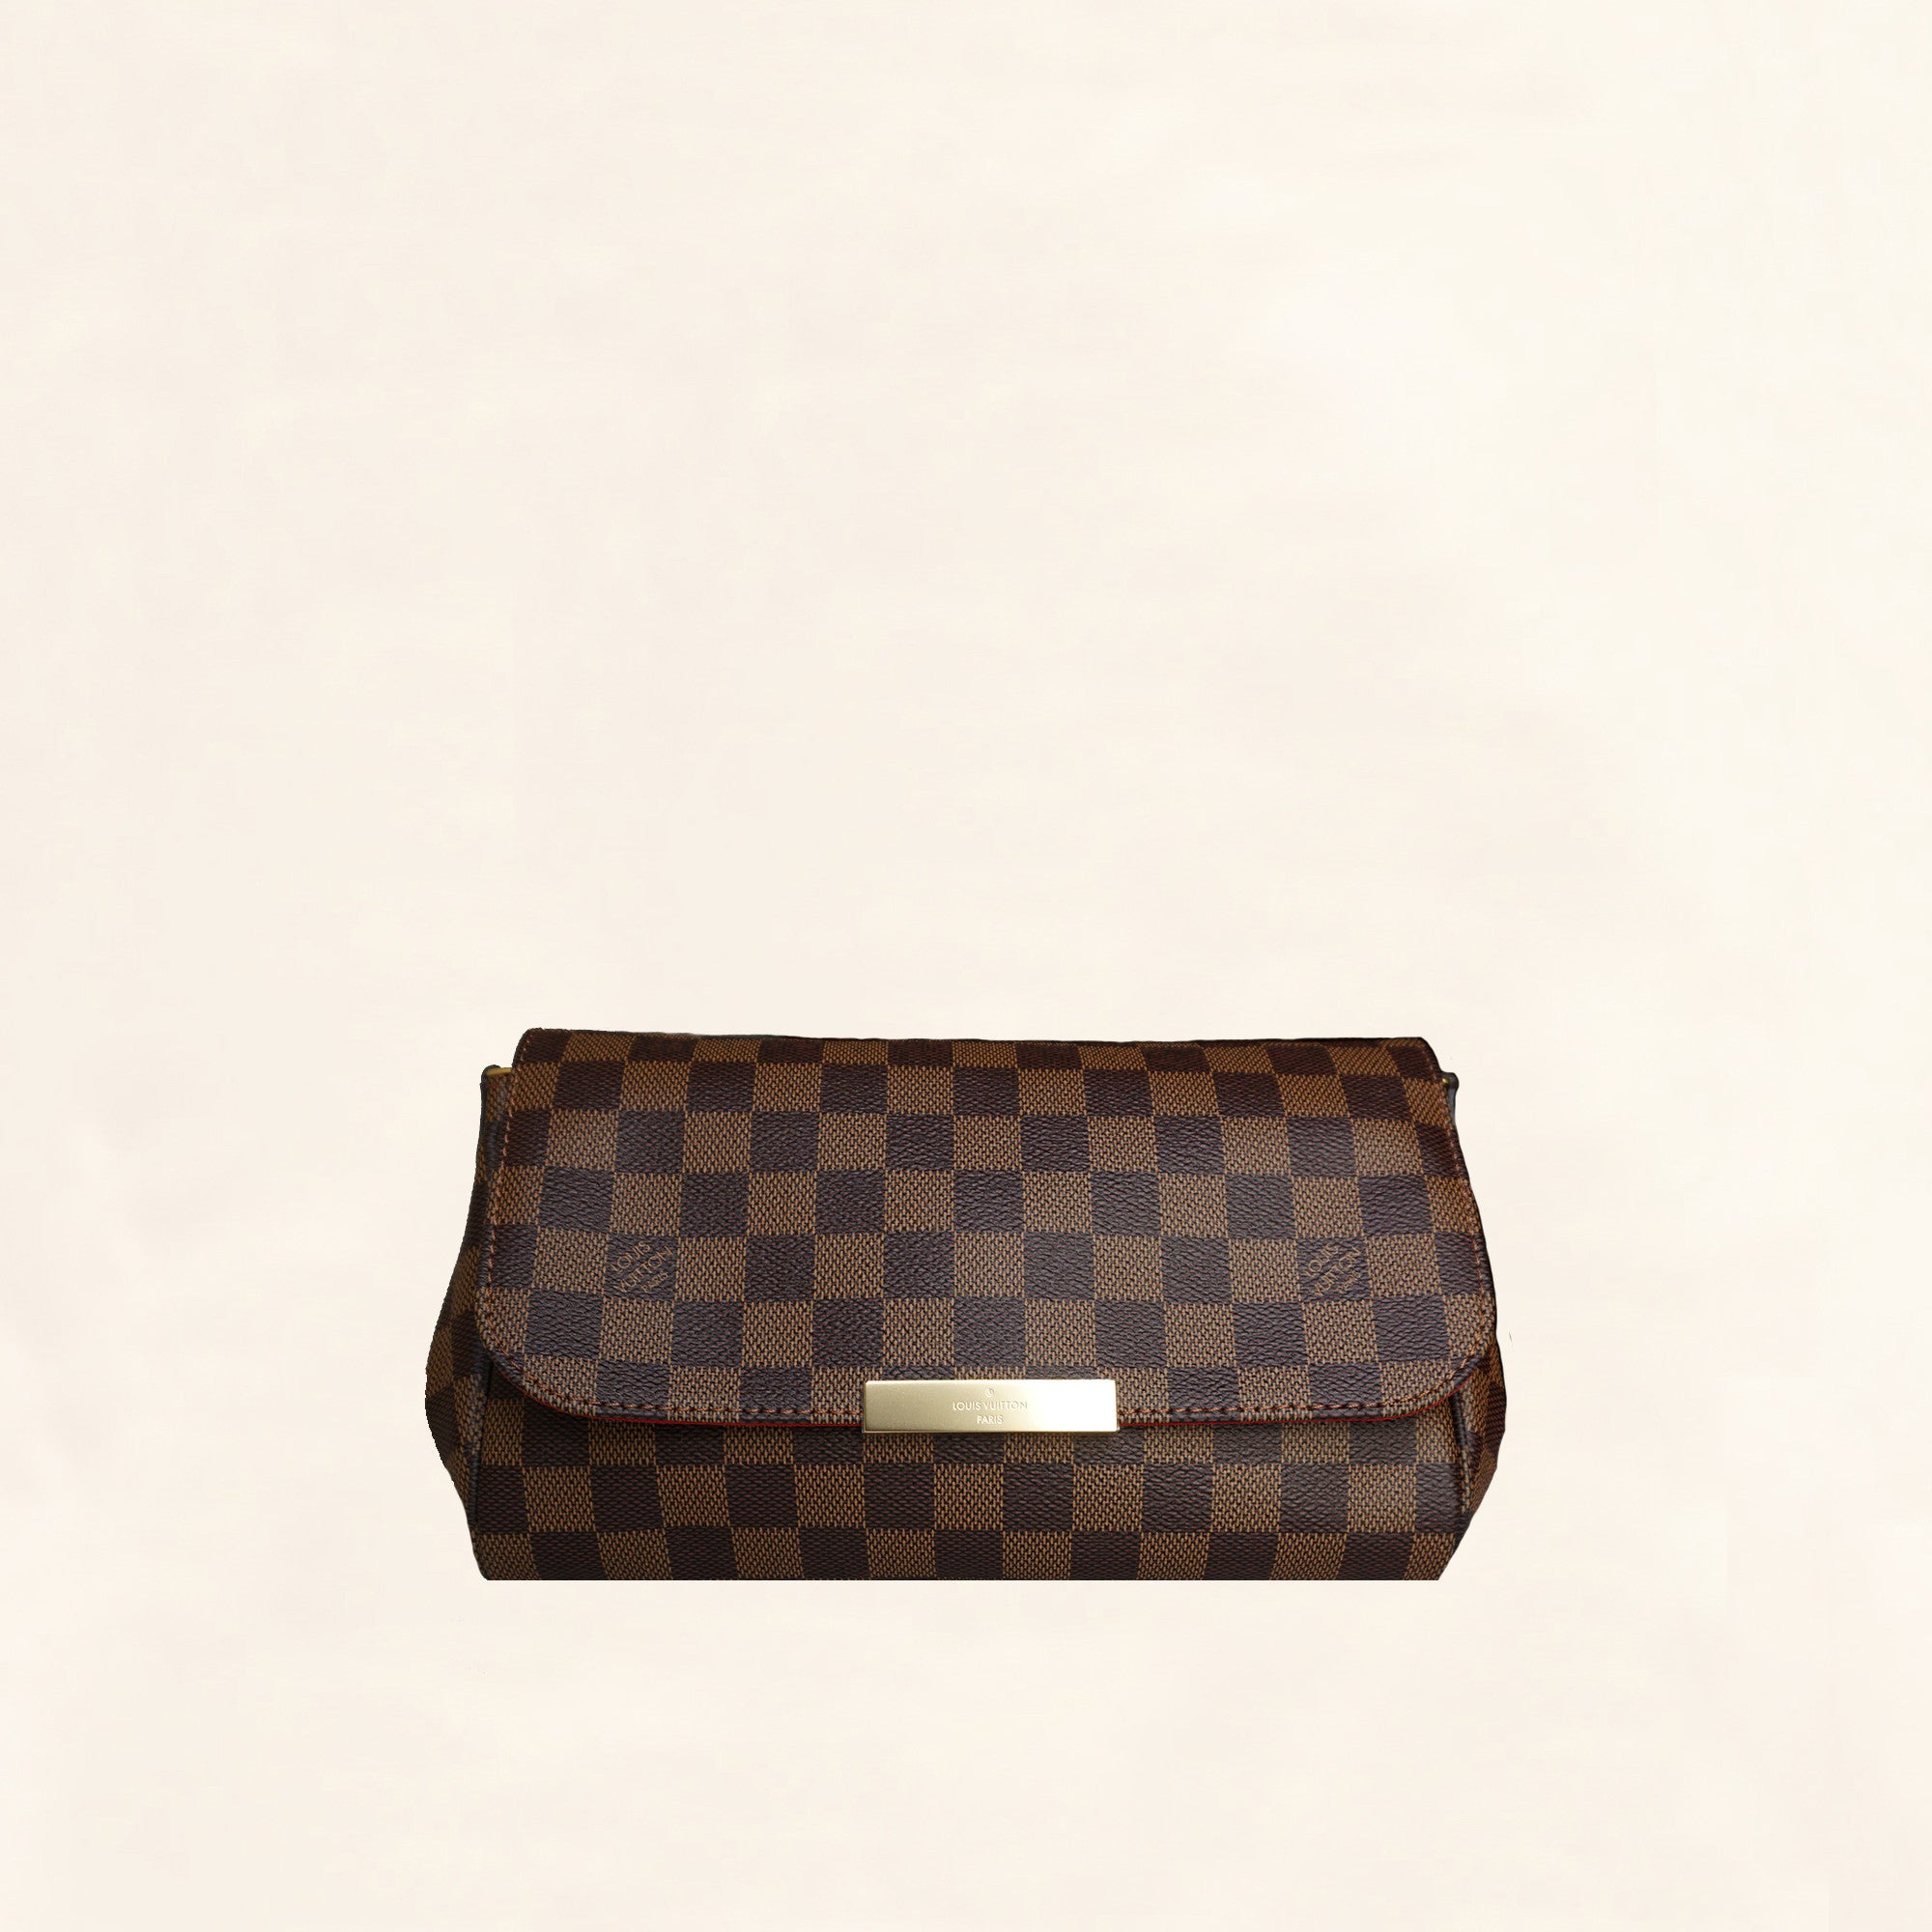 Louis Vuitton, Bags, Louis Vuitton Damier Favorite Mm